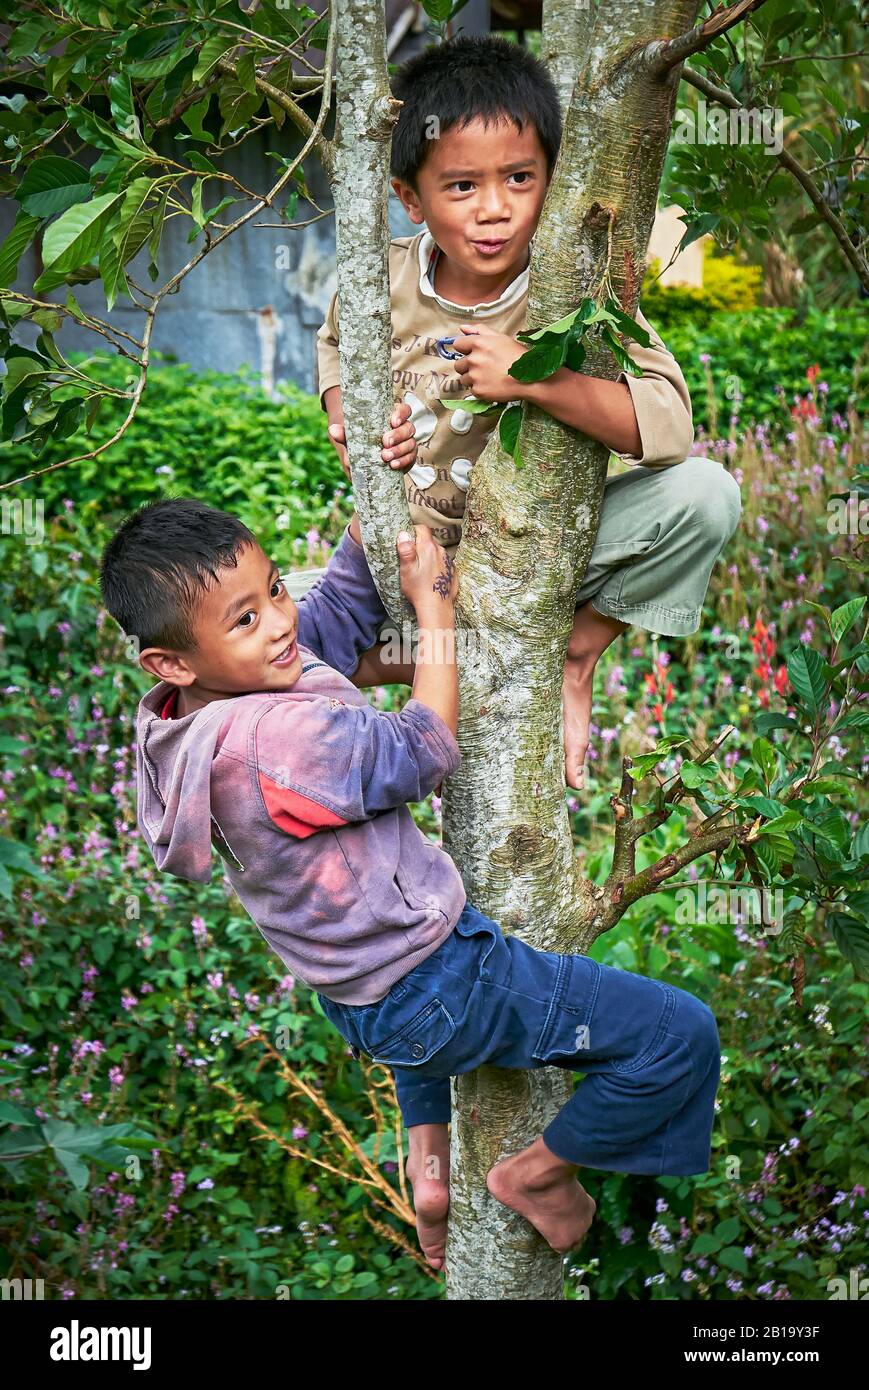 Sagada, Bergprovinz, Philippinen: Zwei junge Jungen klettern barfuß auf einen Baum, hinter ihnen im Hinterhof viele rosafarbene Blumen Stockfoto